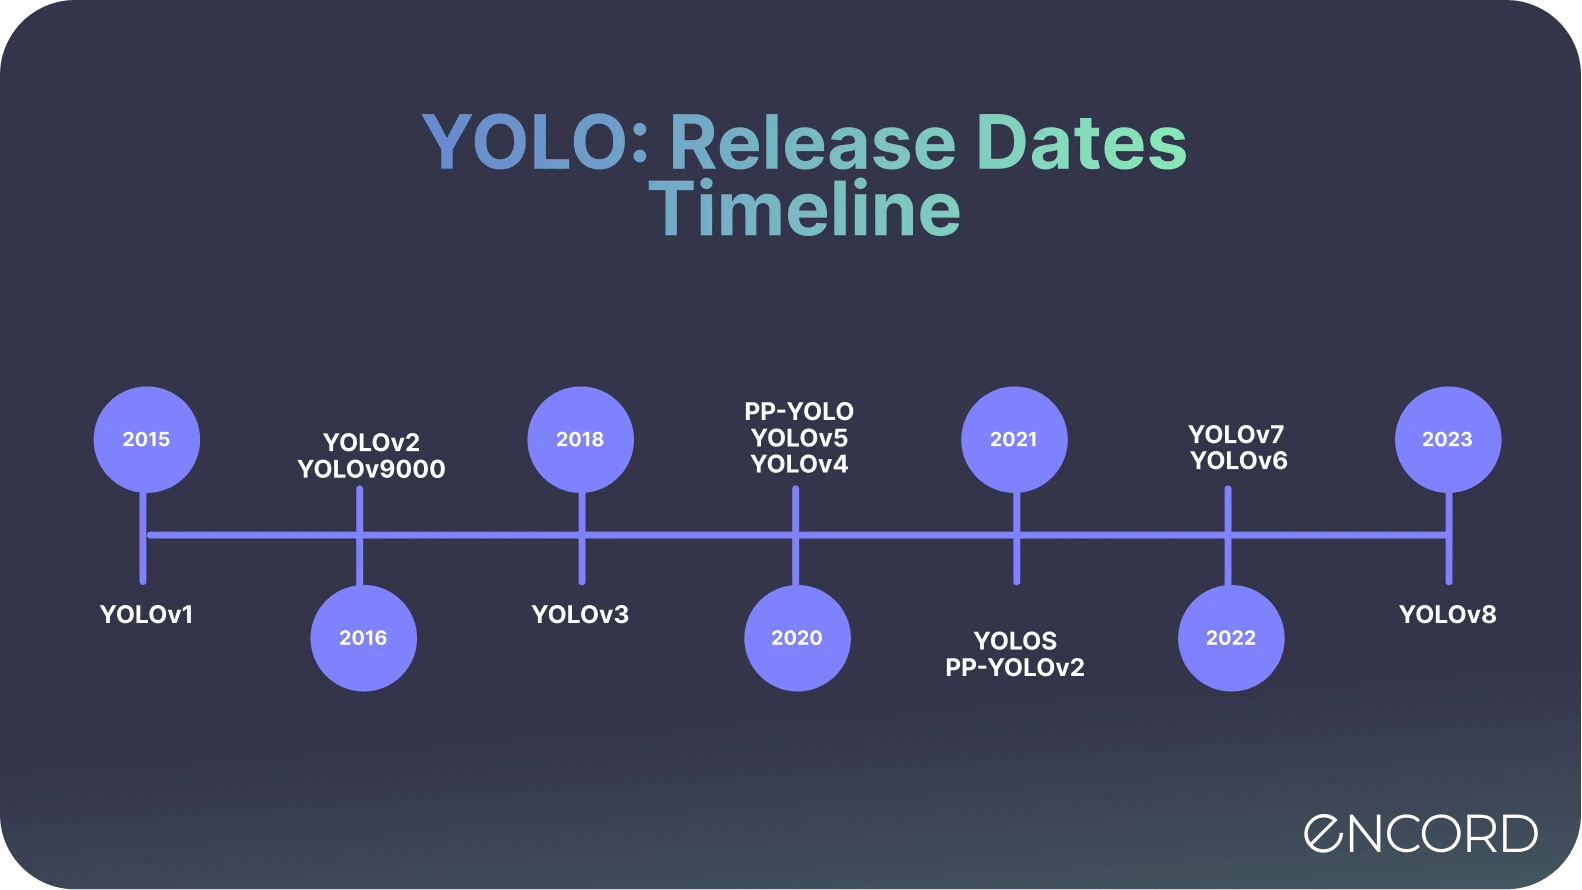 YOLO: Release Dates Timeline